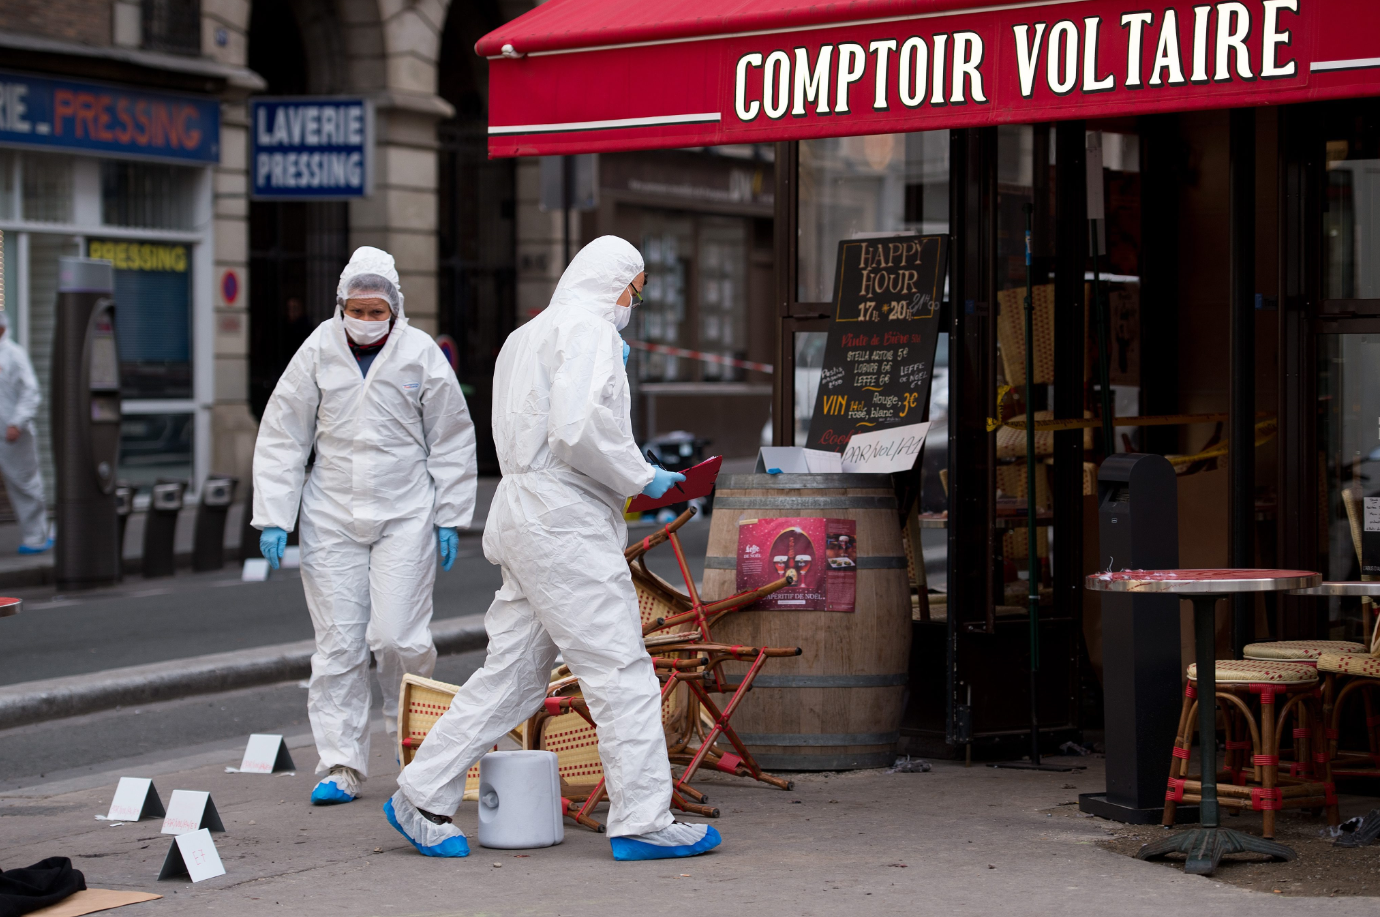 Το φως της ημέρας αποκάλυψε τα σημάδια του τρόμου στο Παρίσι – ΦΩΤΟ